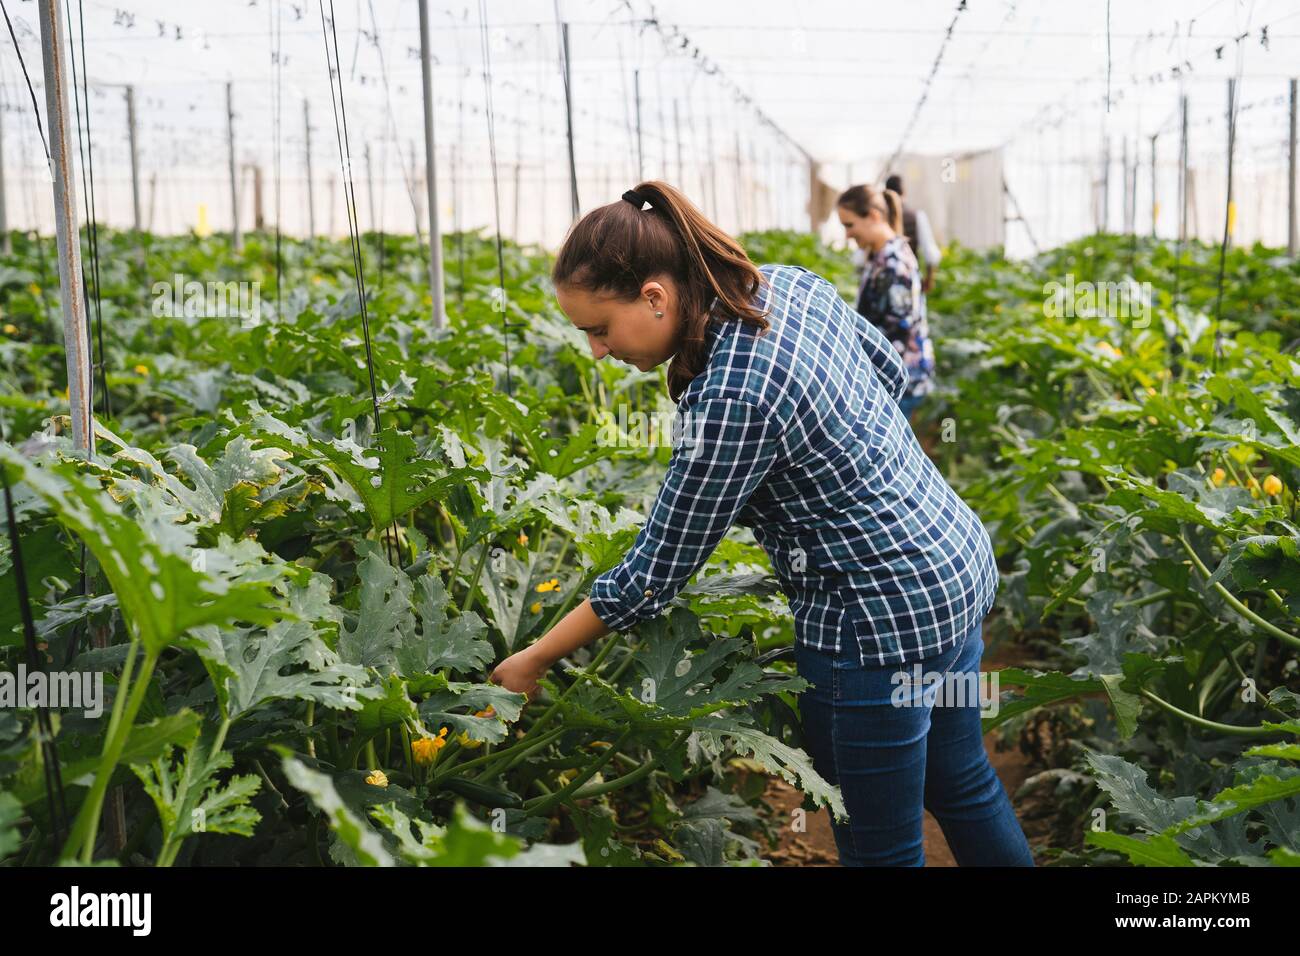 Checking zucchini plants in a greenhouse, Almeria, Spain Stock Photo